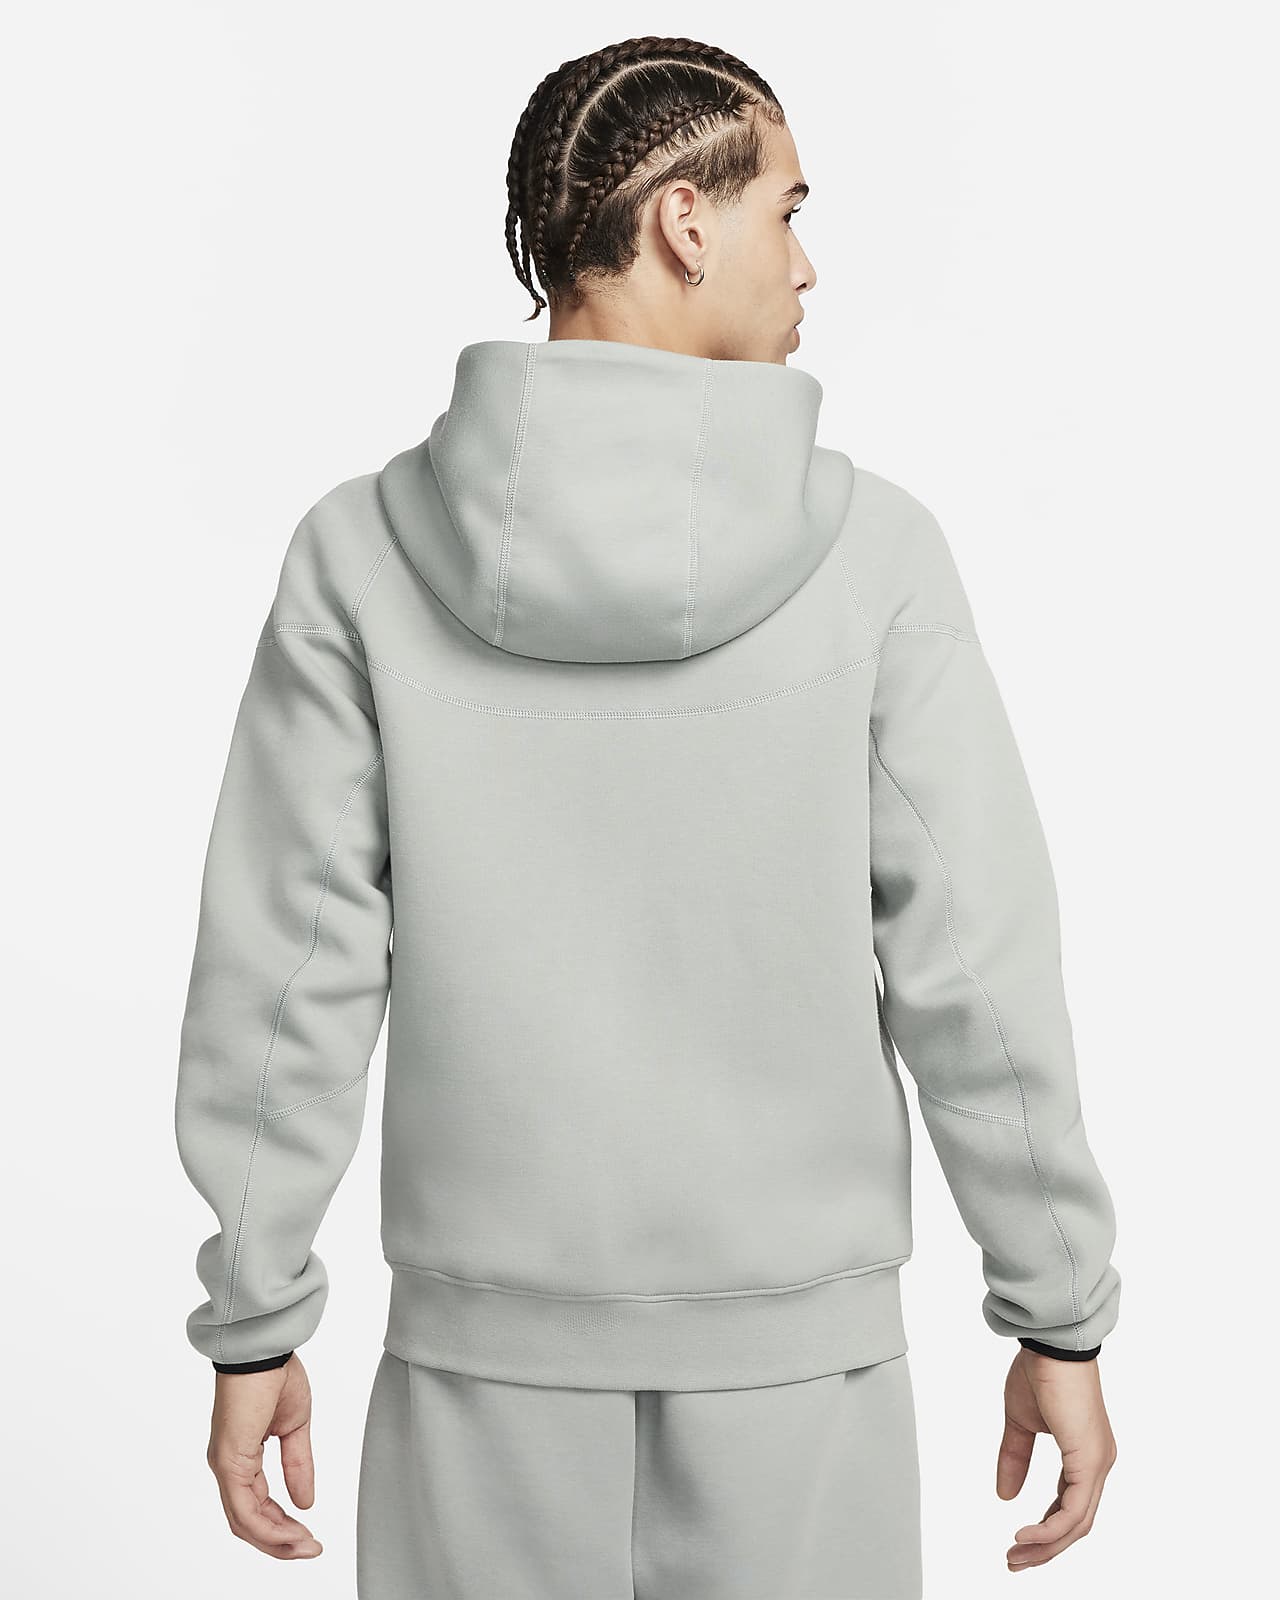 Nike Sportswear Tech Fleece Full-Zip Hoodie Size L - Black for